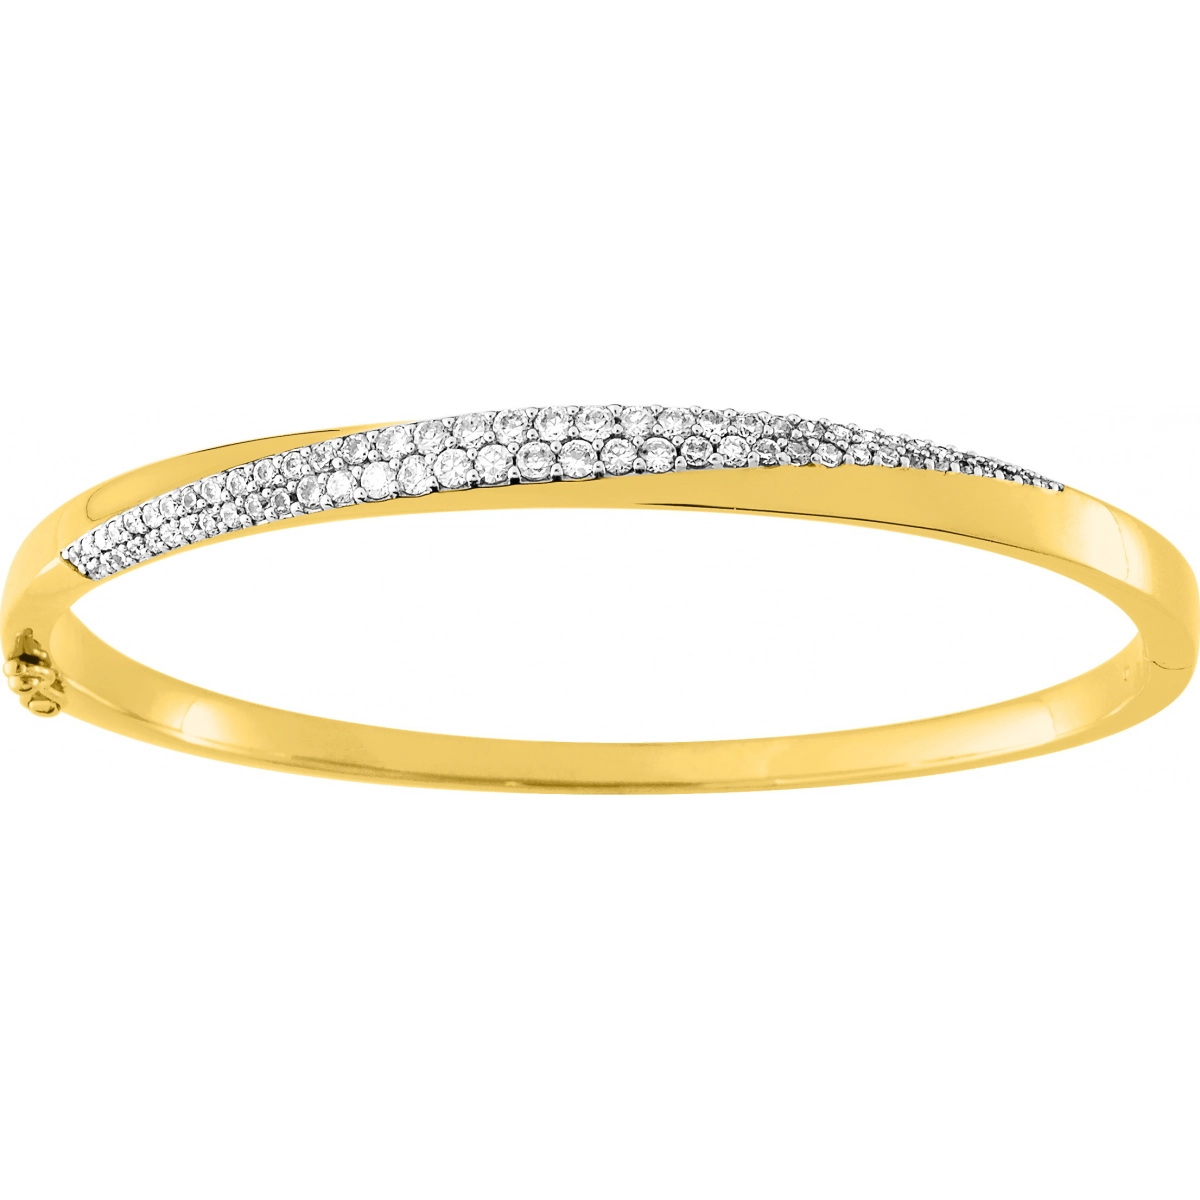 Bracelet 60x50 w. cz gold plated Brass 2TG  Lua Blanca  BSBJ45Z.0